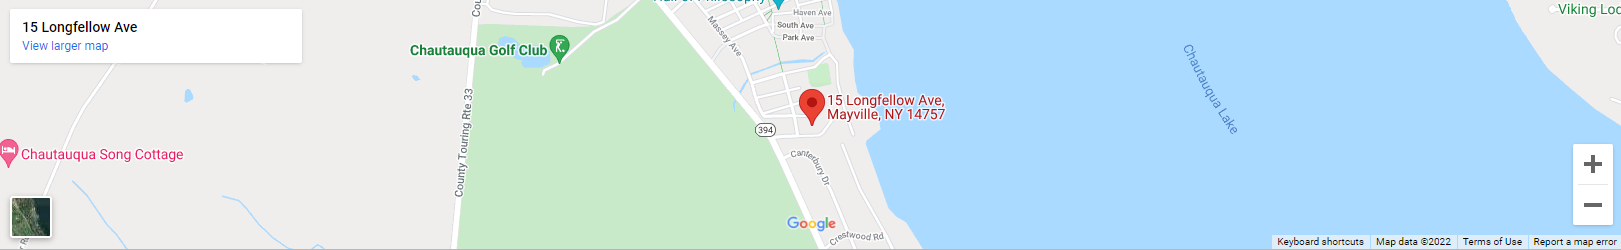 A map of mayville, ny 1 4 7 5 9